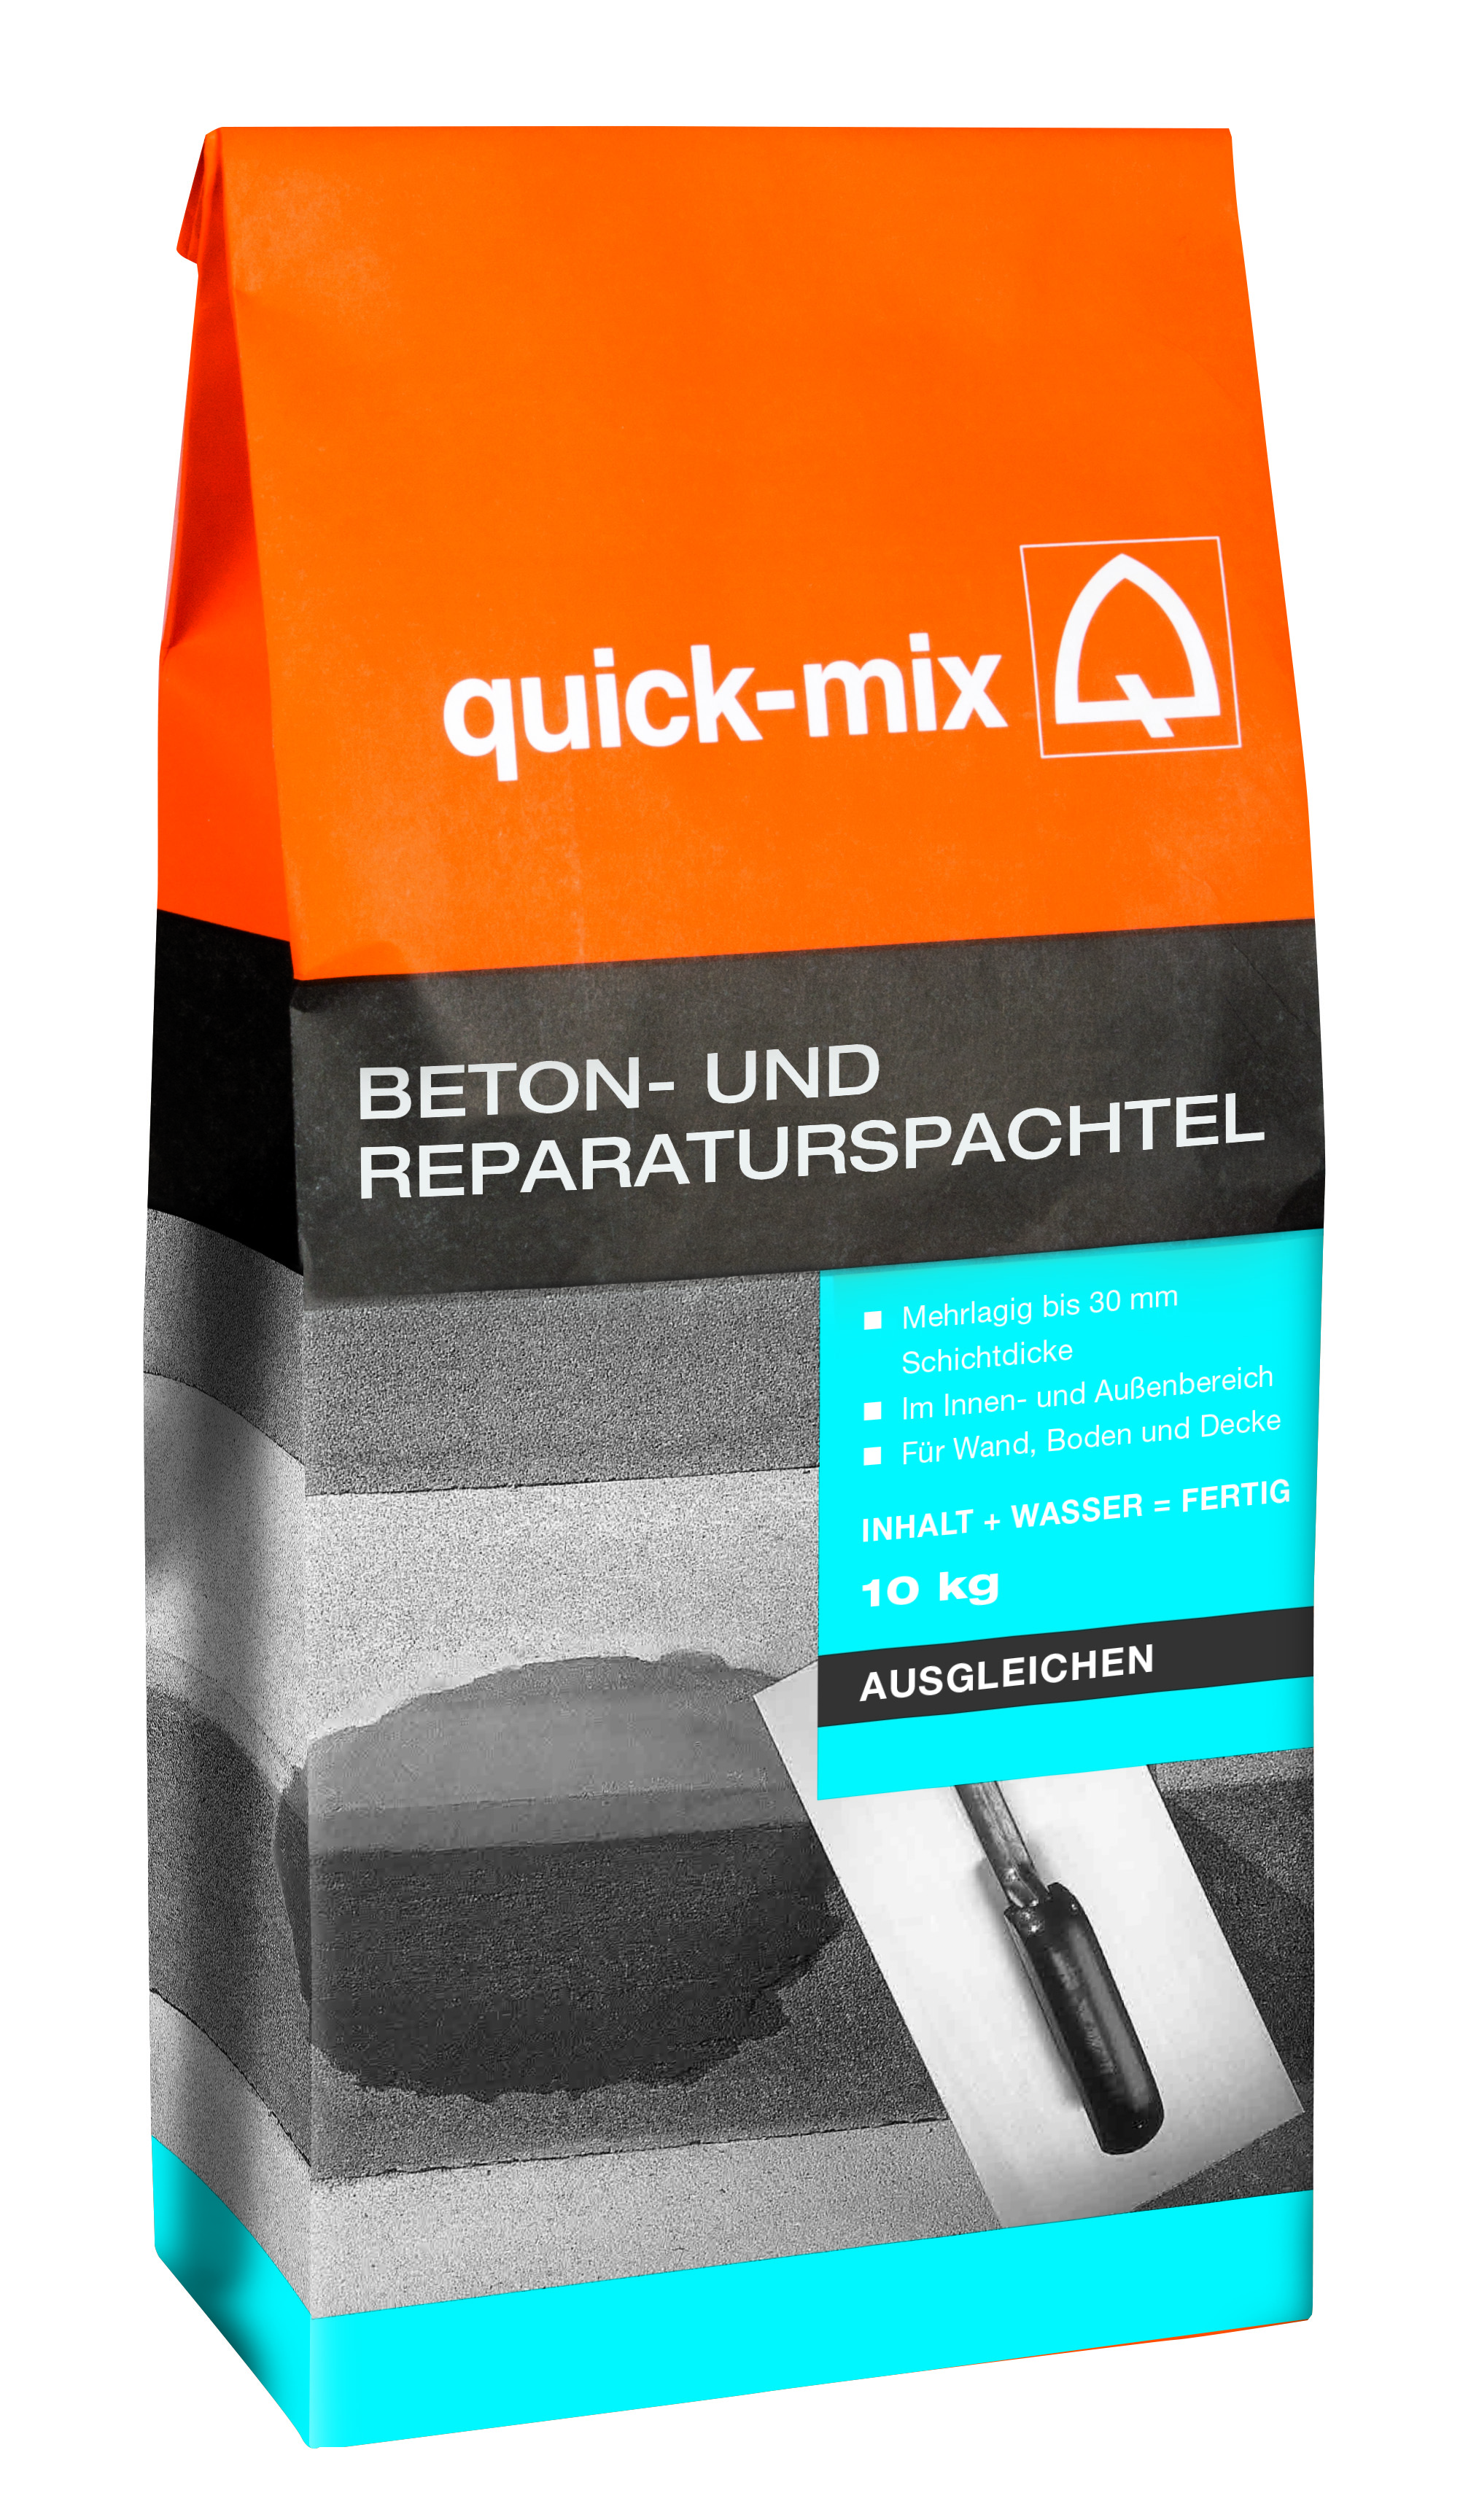 Quick-Mix Beton - und Reparaturspachtel